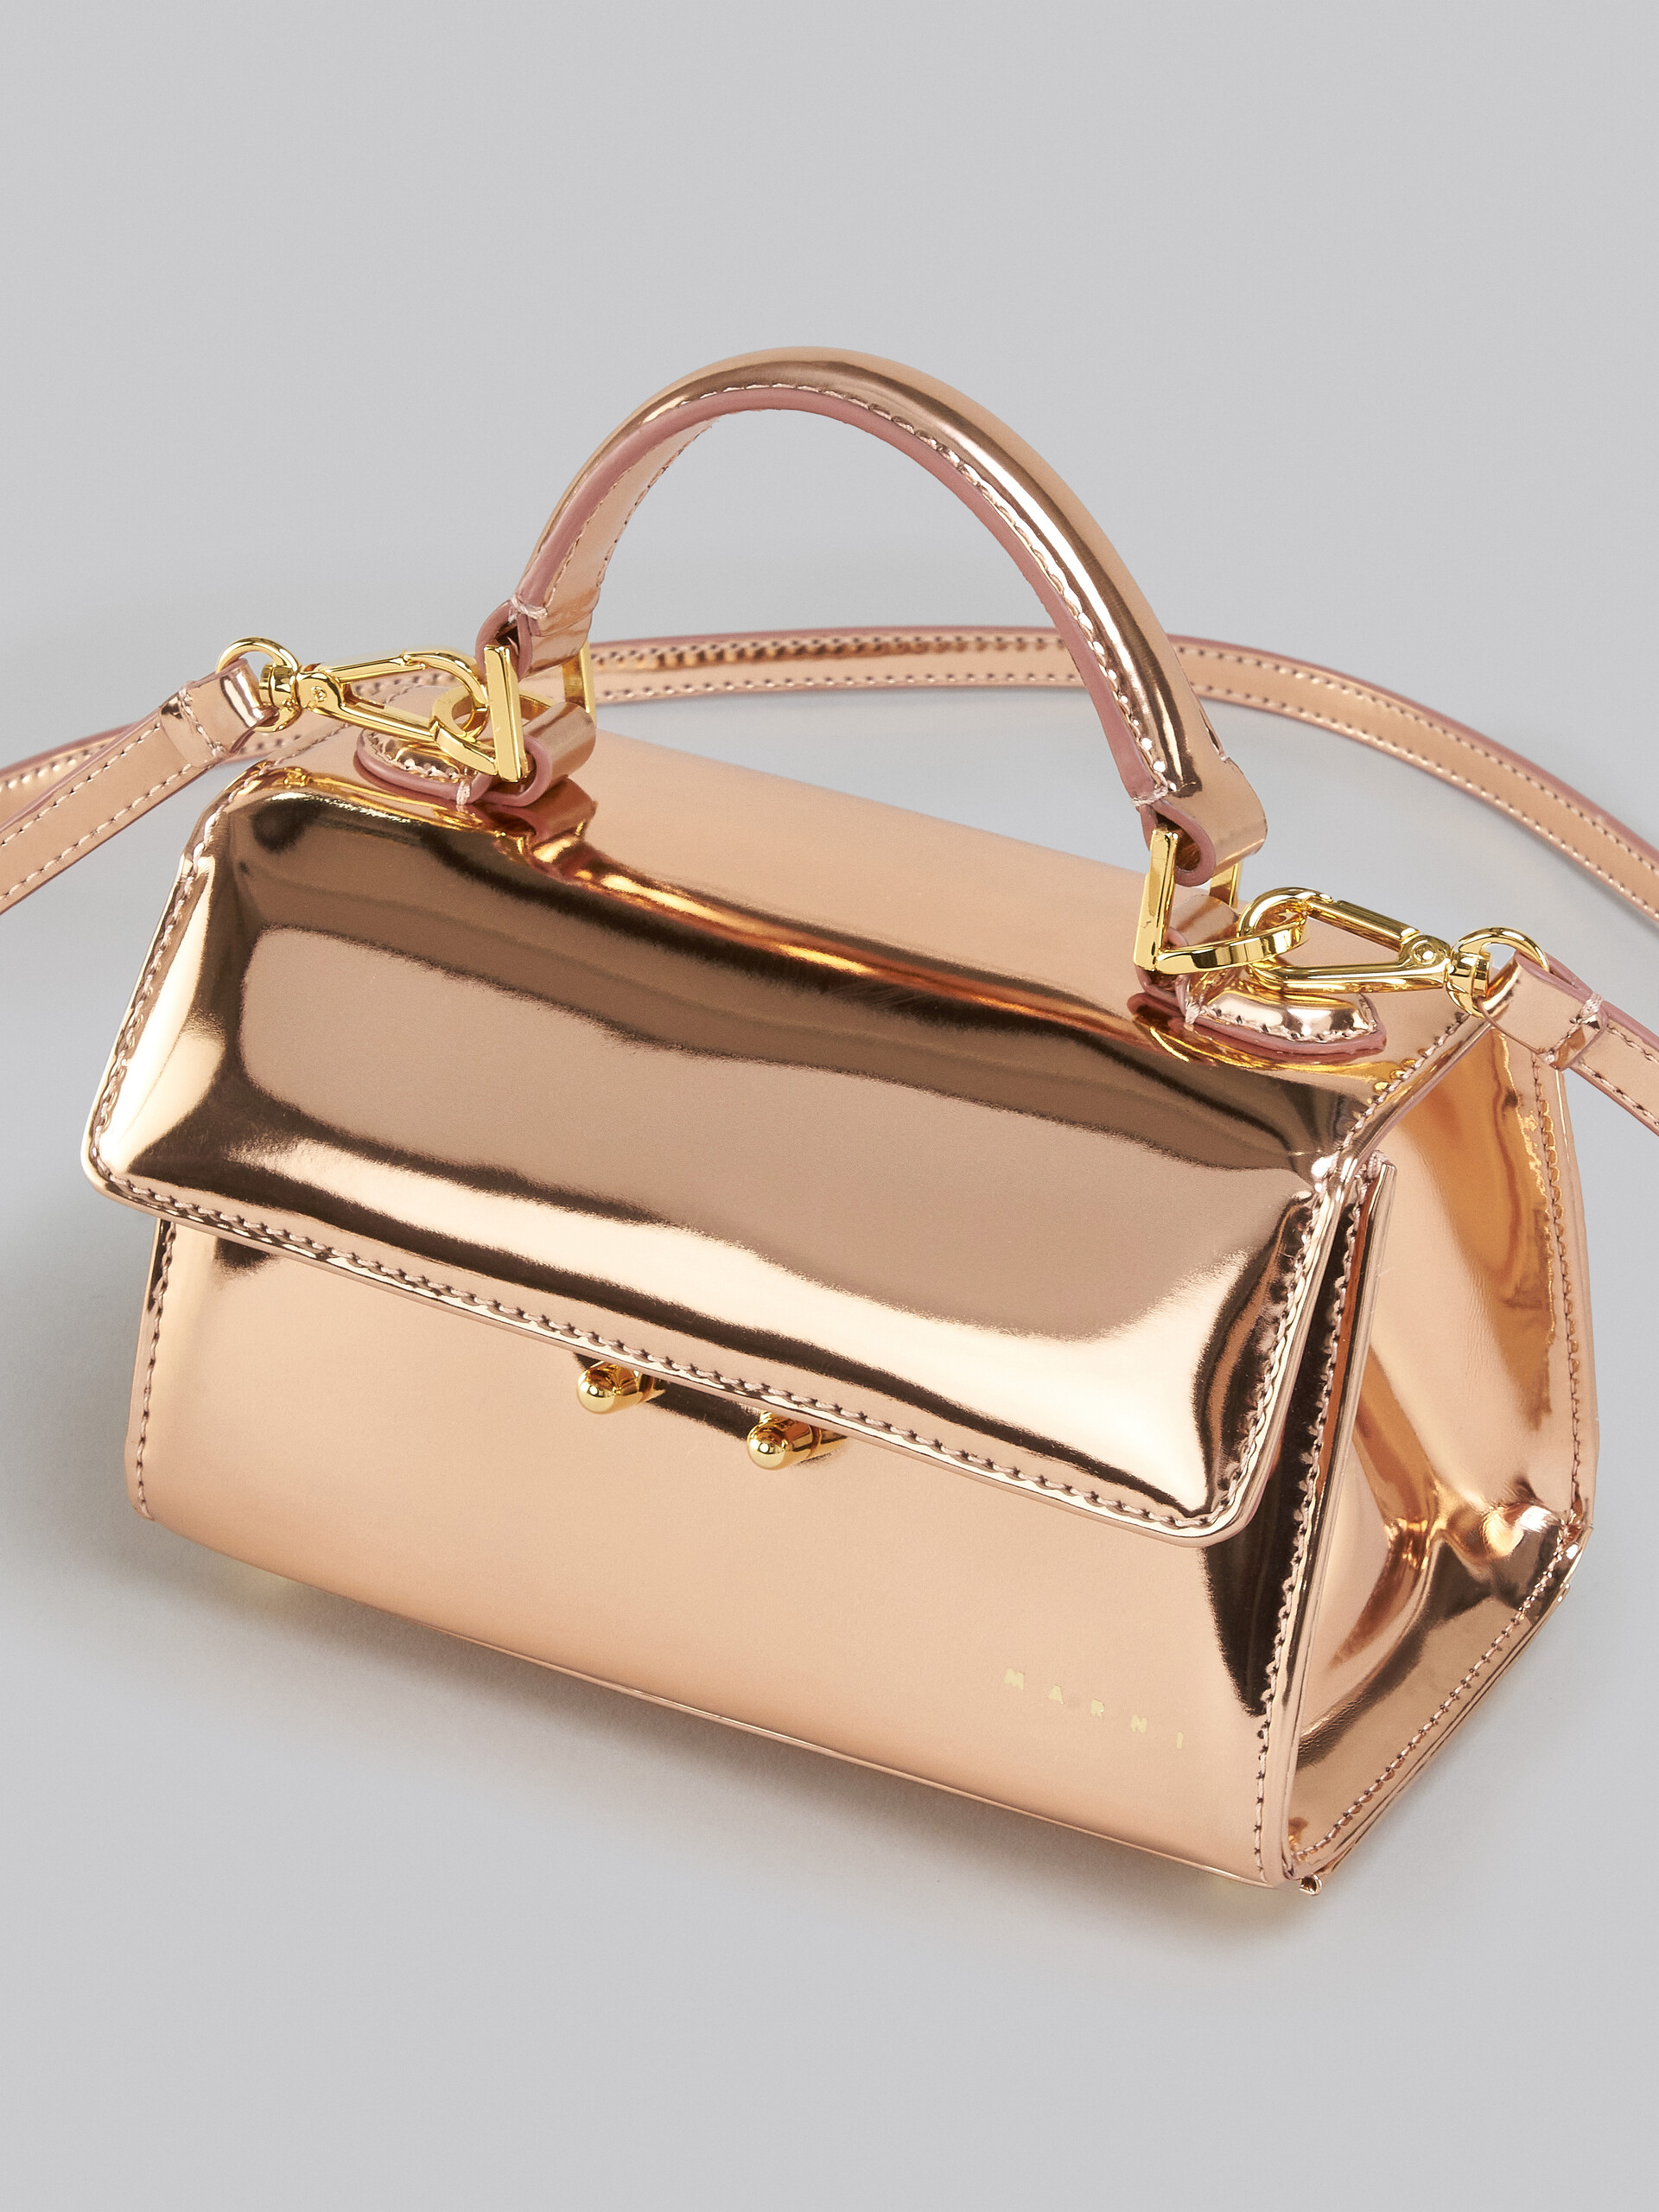 Relativity Bag Mini in pelle specchiata oro rosa - Borse a mano - Image 5